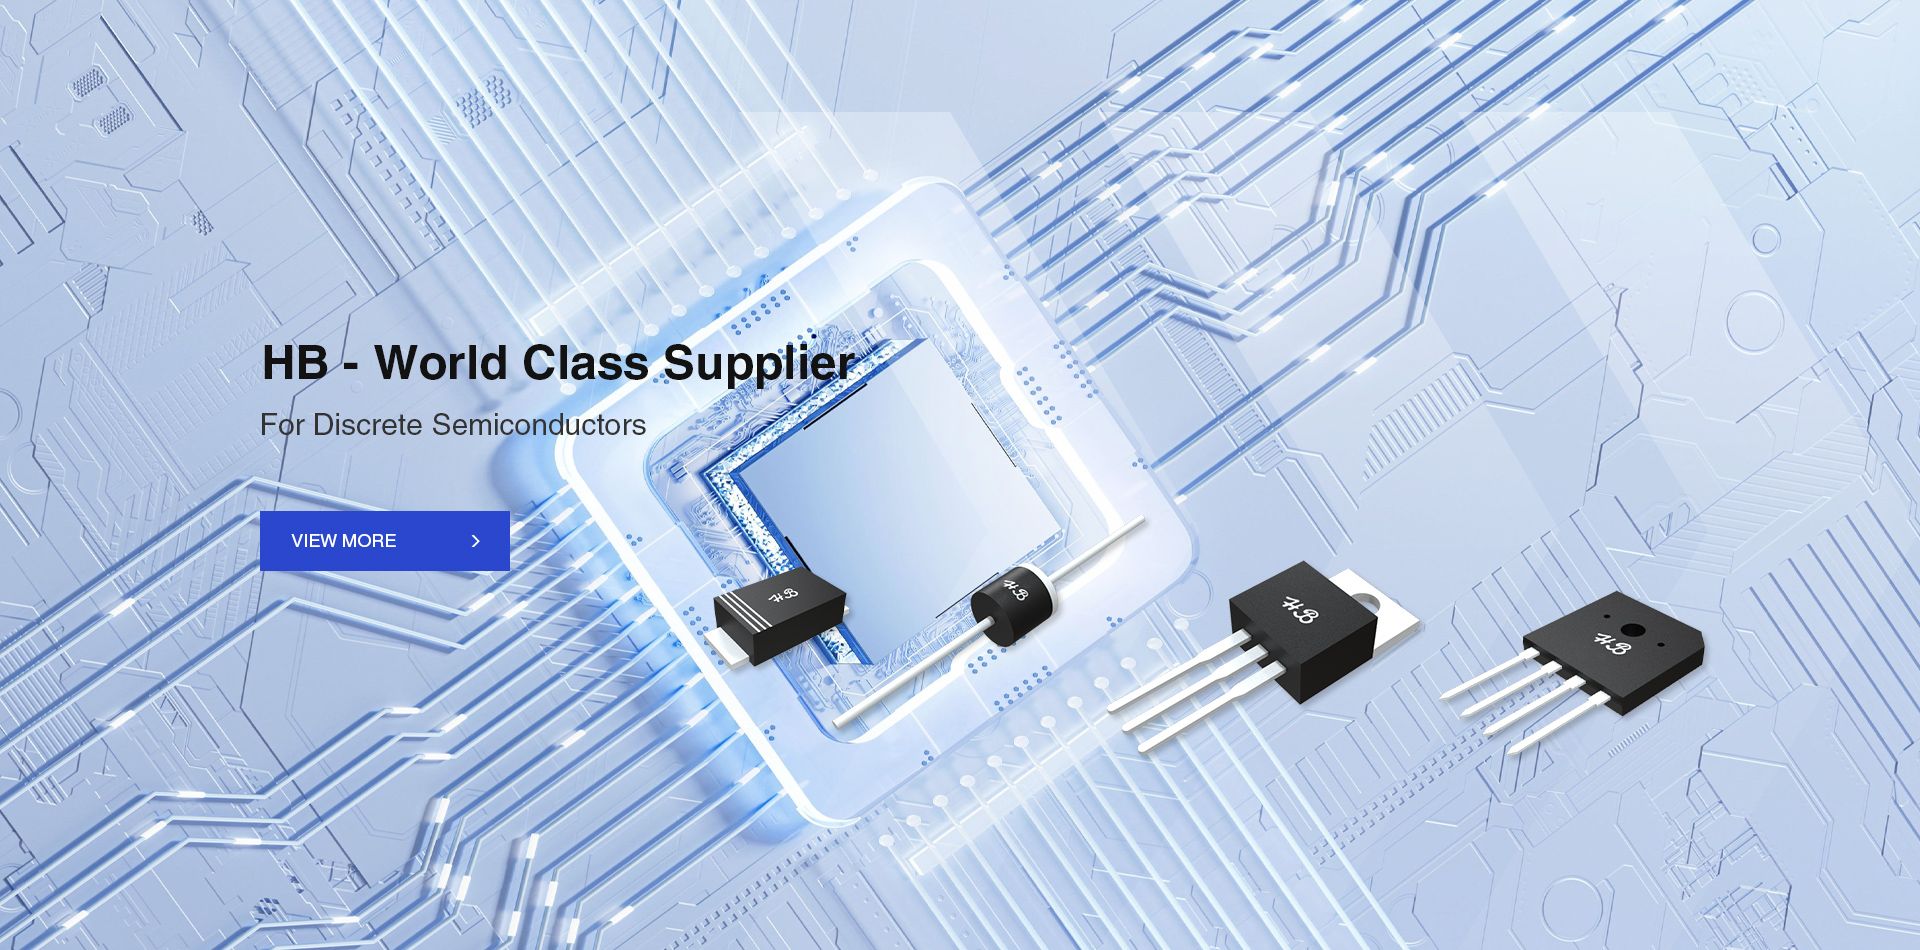 HB - World Class Supplier